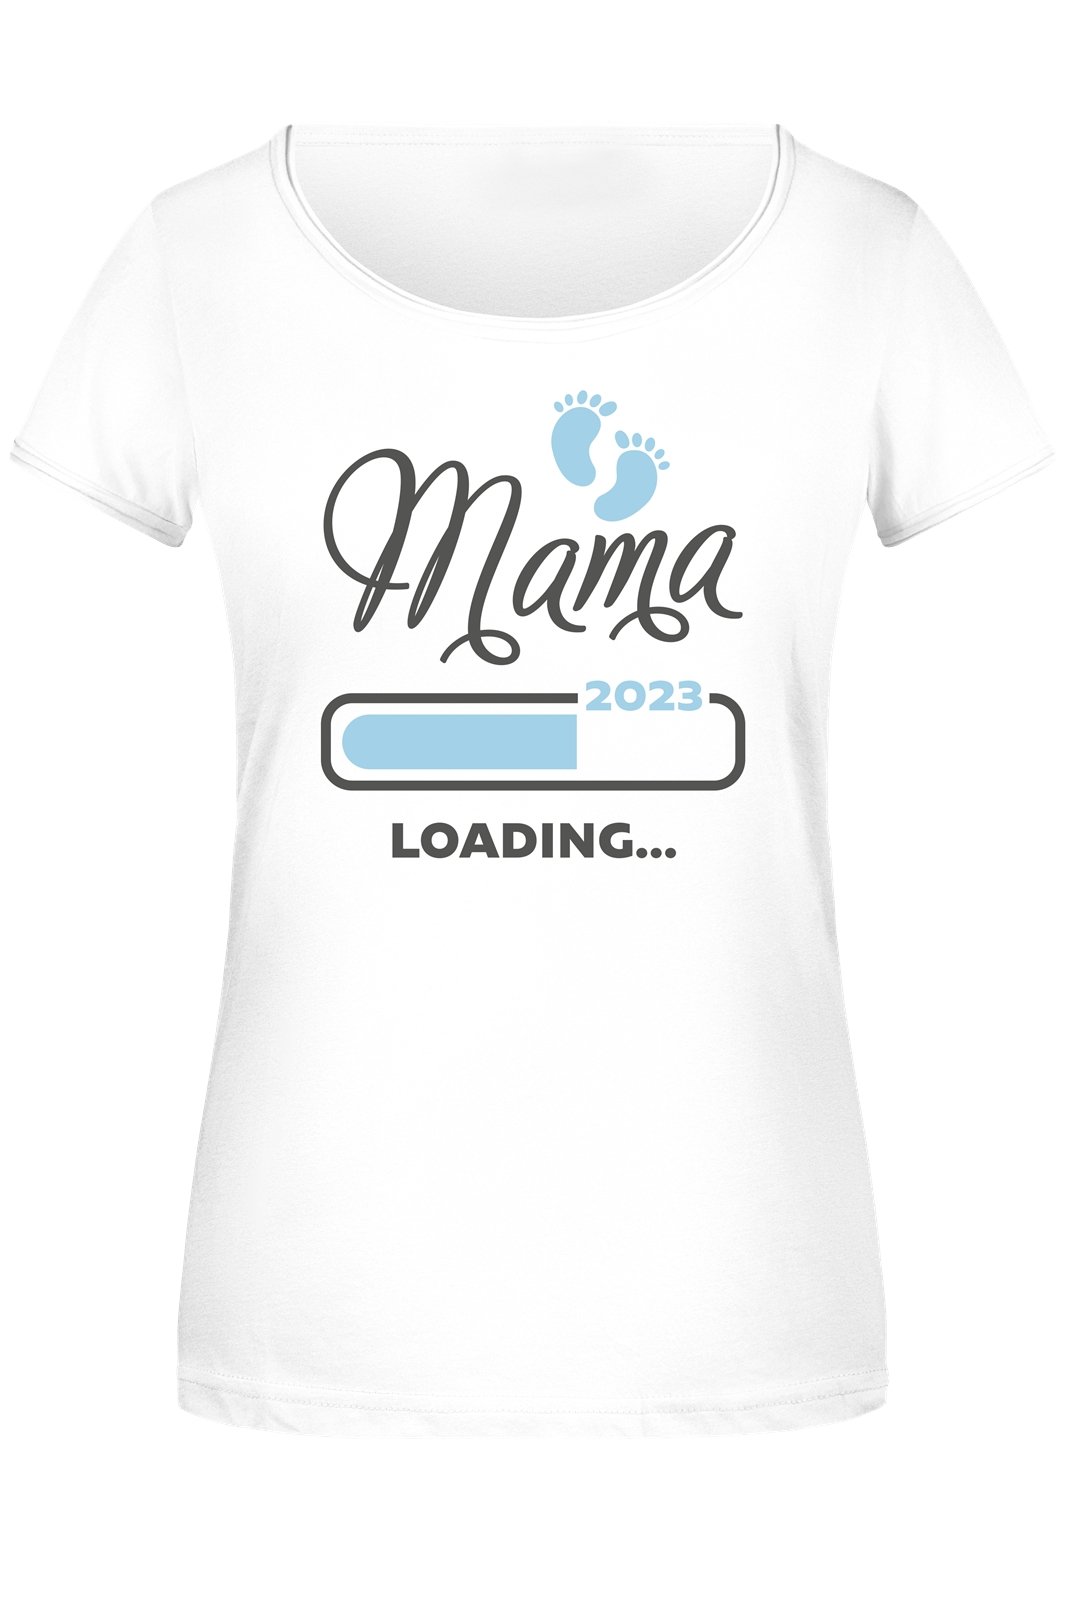 Bild: T-Shirt Damen - Mama loading Geschenkidee